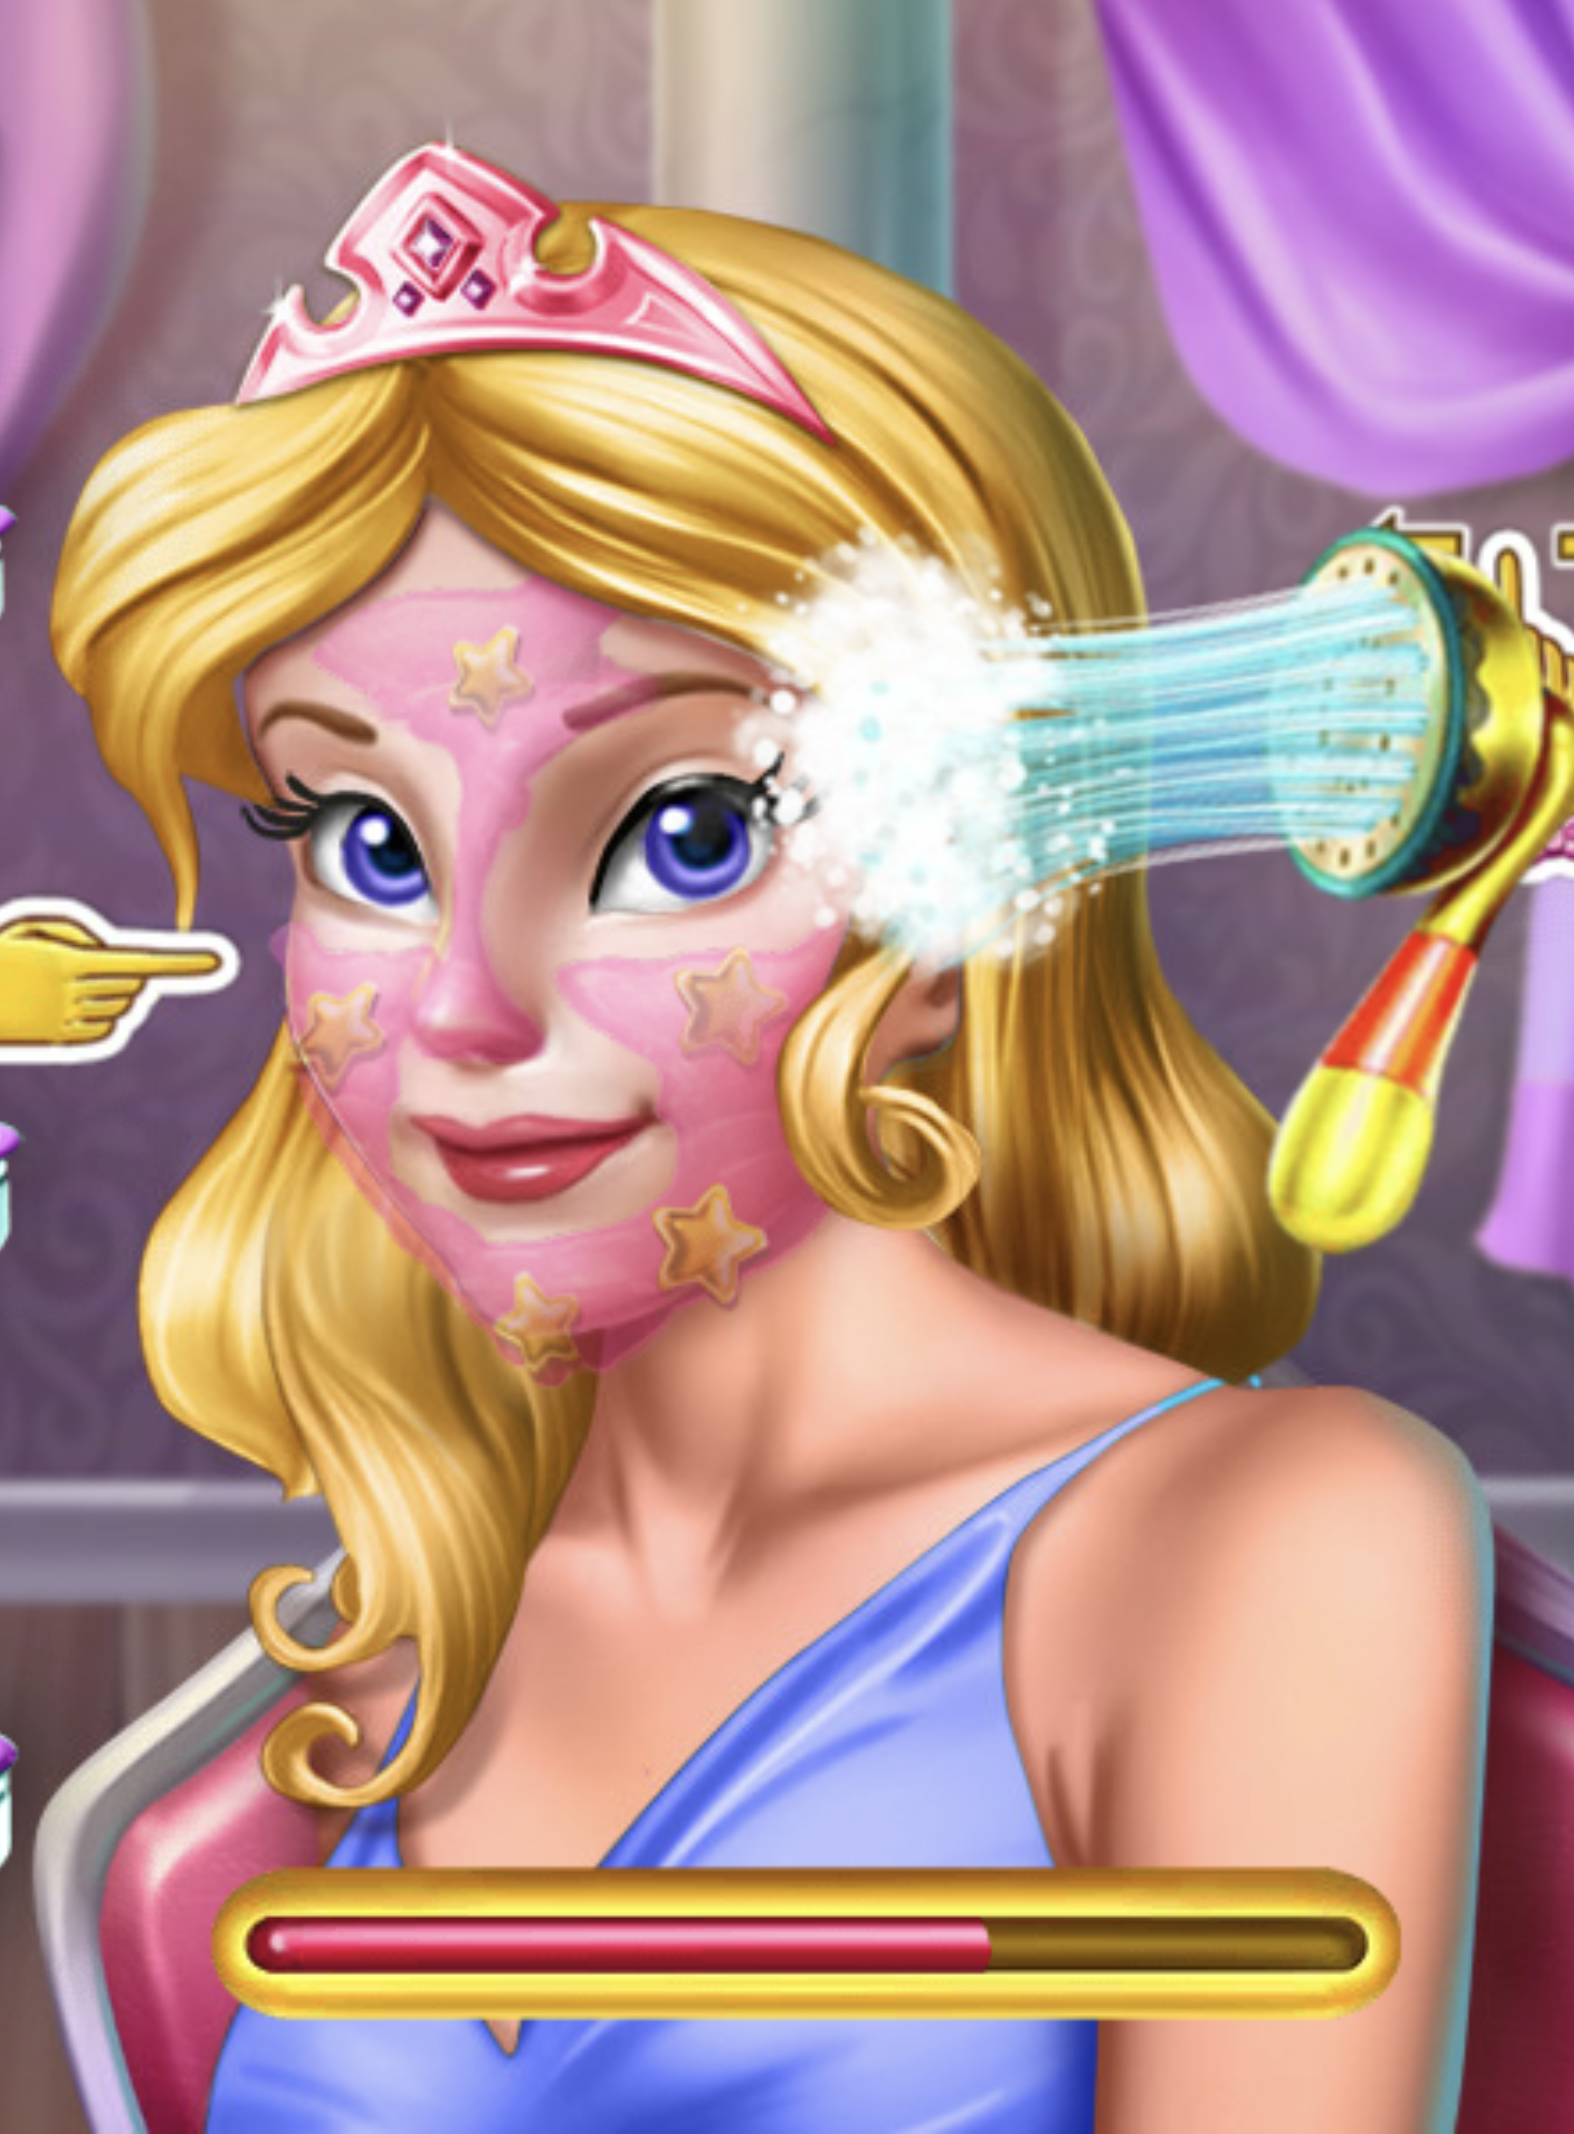 Jogos de Visite o Spa das Princesas no Meninas Jogos